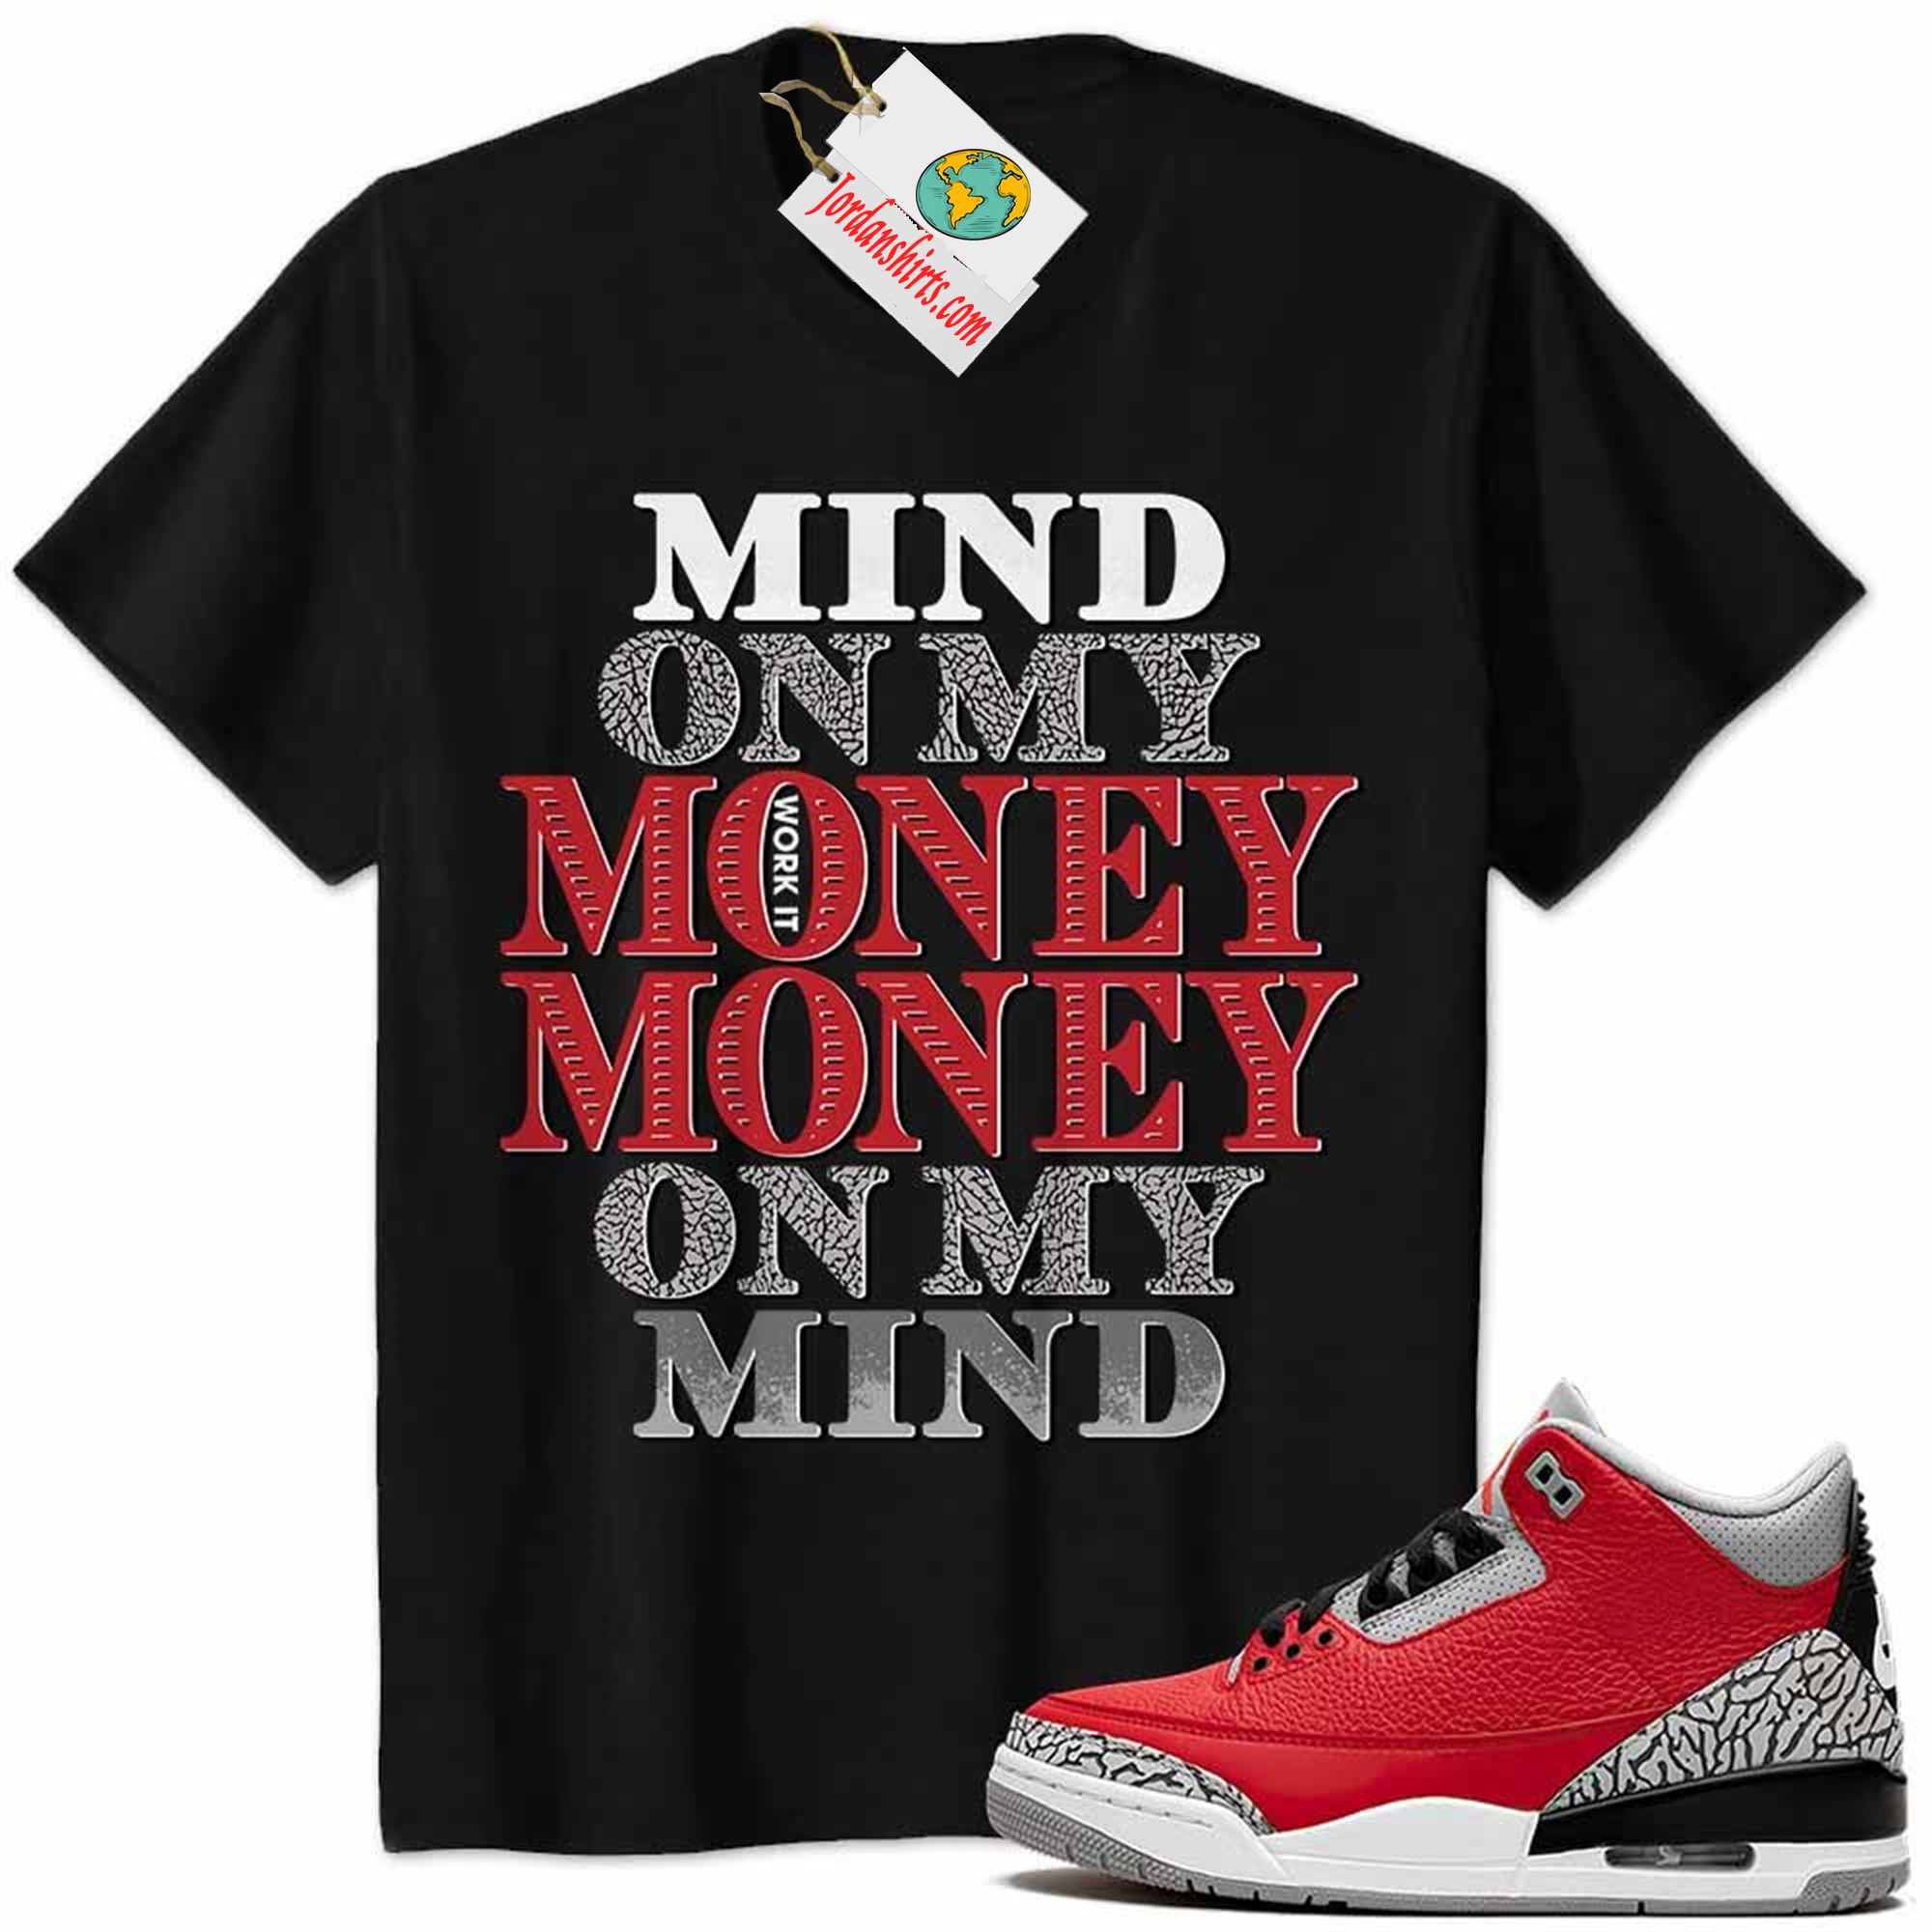 Jordan 3 Shirt, Jordan 3 Cement Shirt Mind On My Money Money On My Mind Black Size Up To 5xl